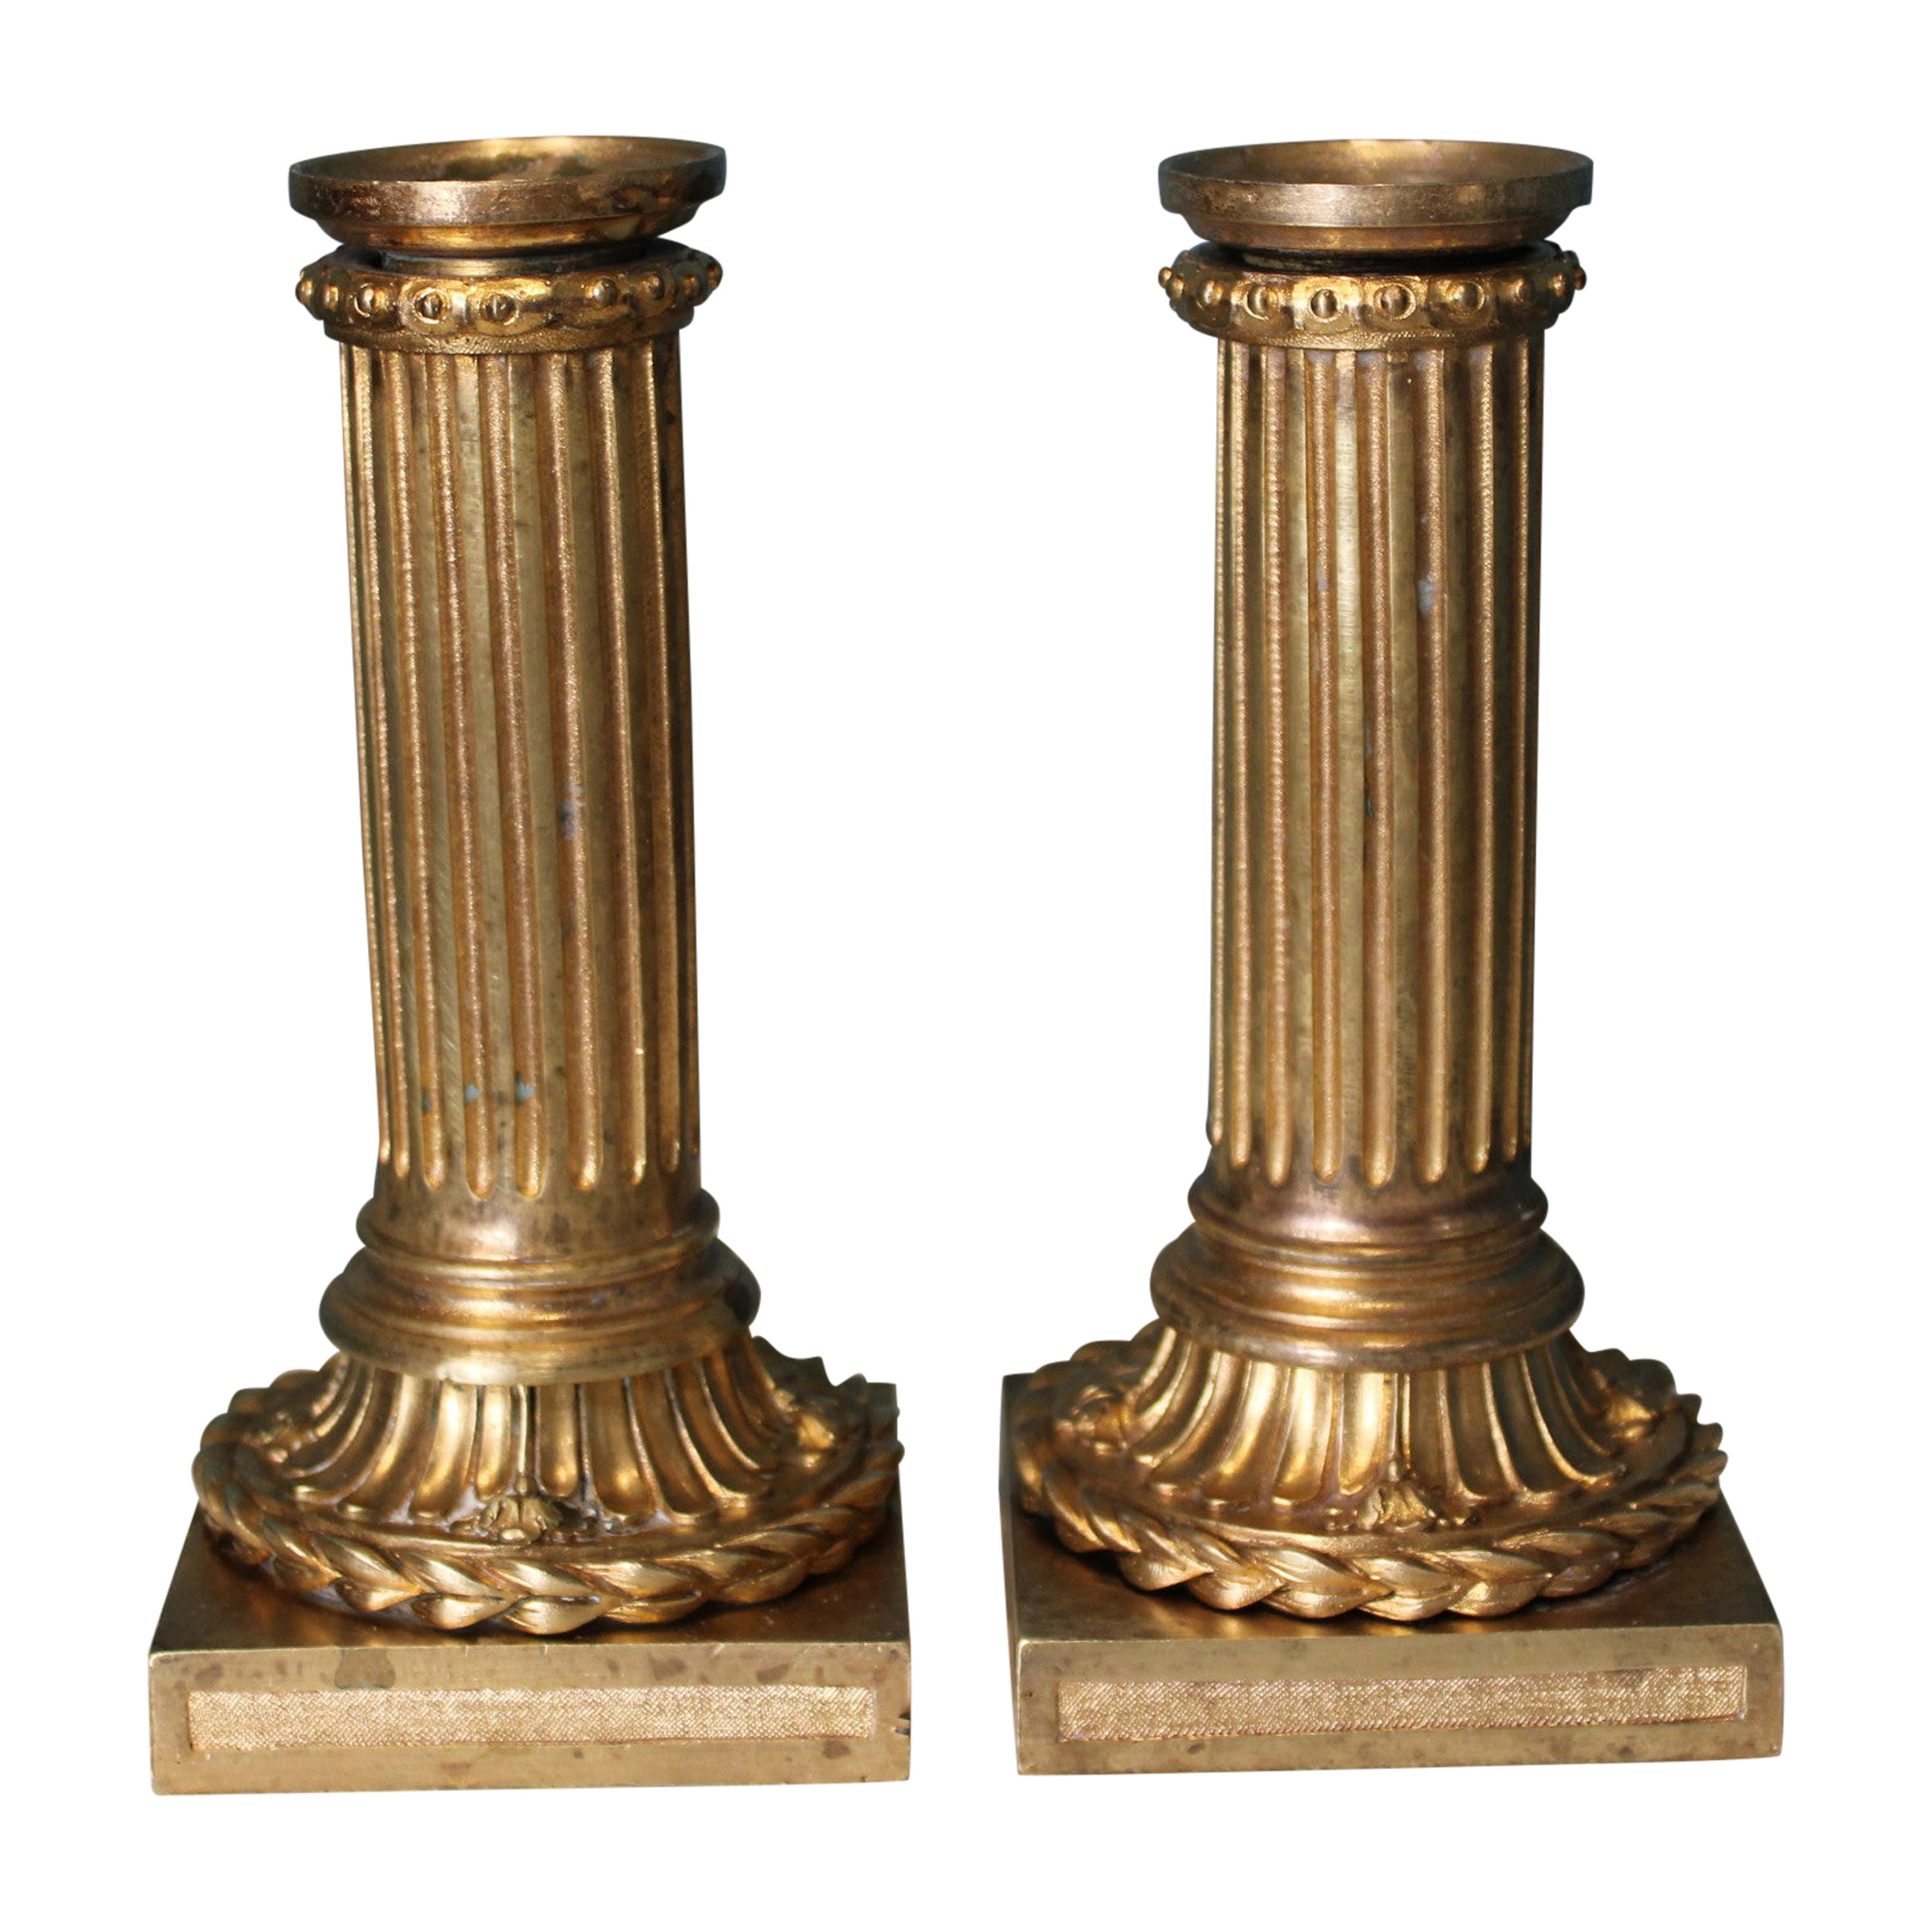 Chandeliers en bronze doré, XIXe siècle